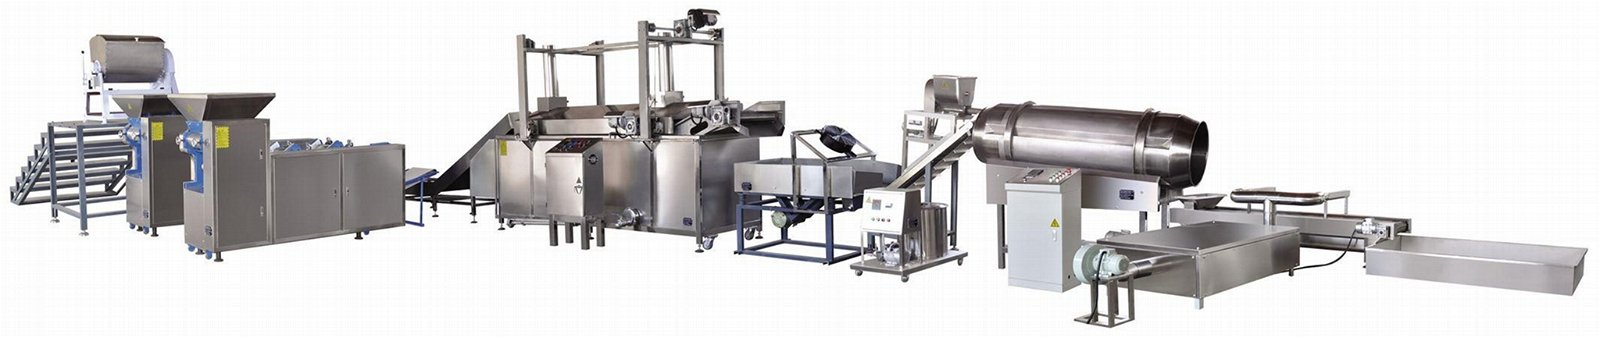 全自動油炸麵食生產線 高品質麵食生產設備